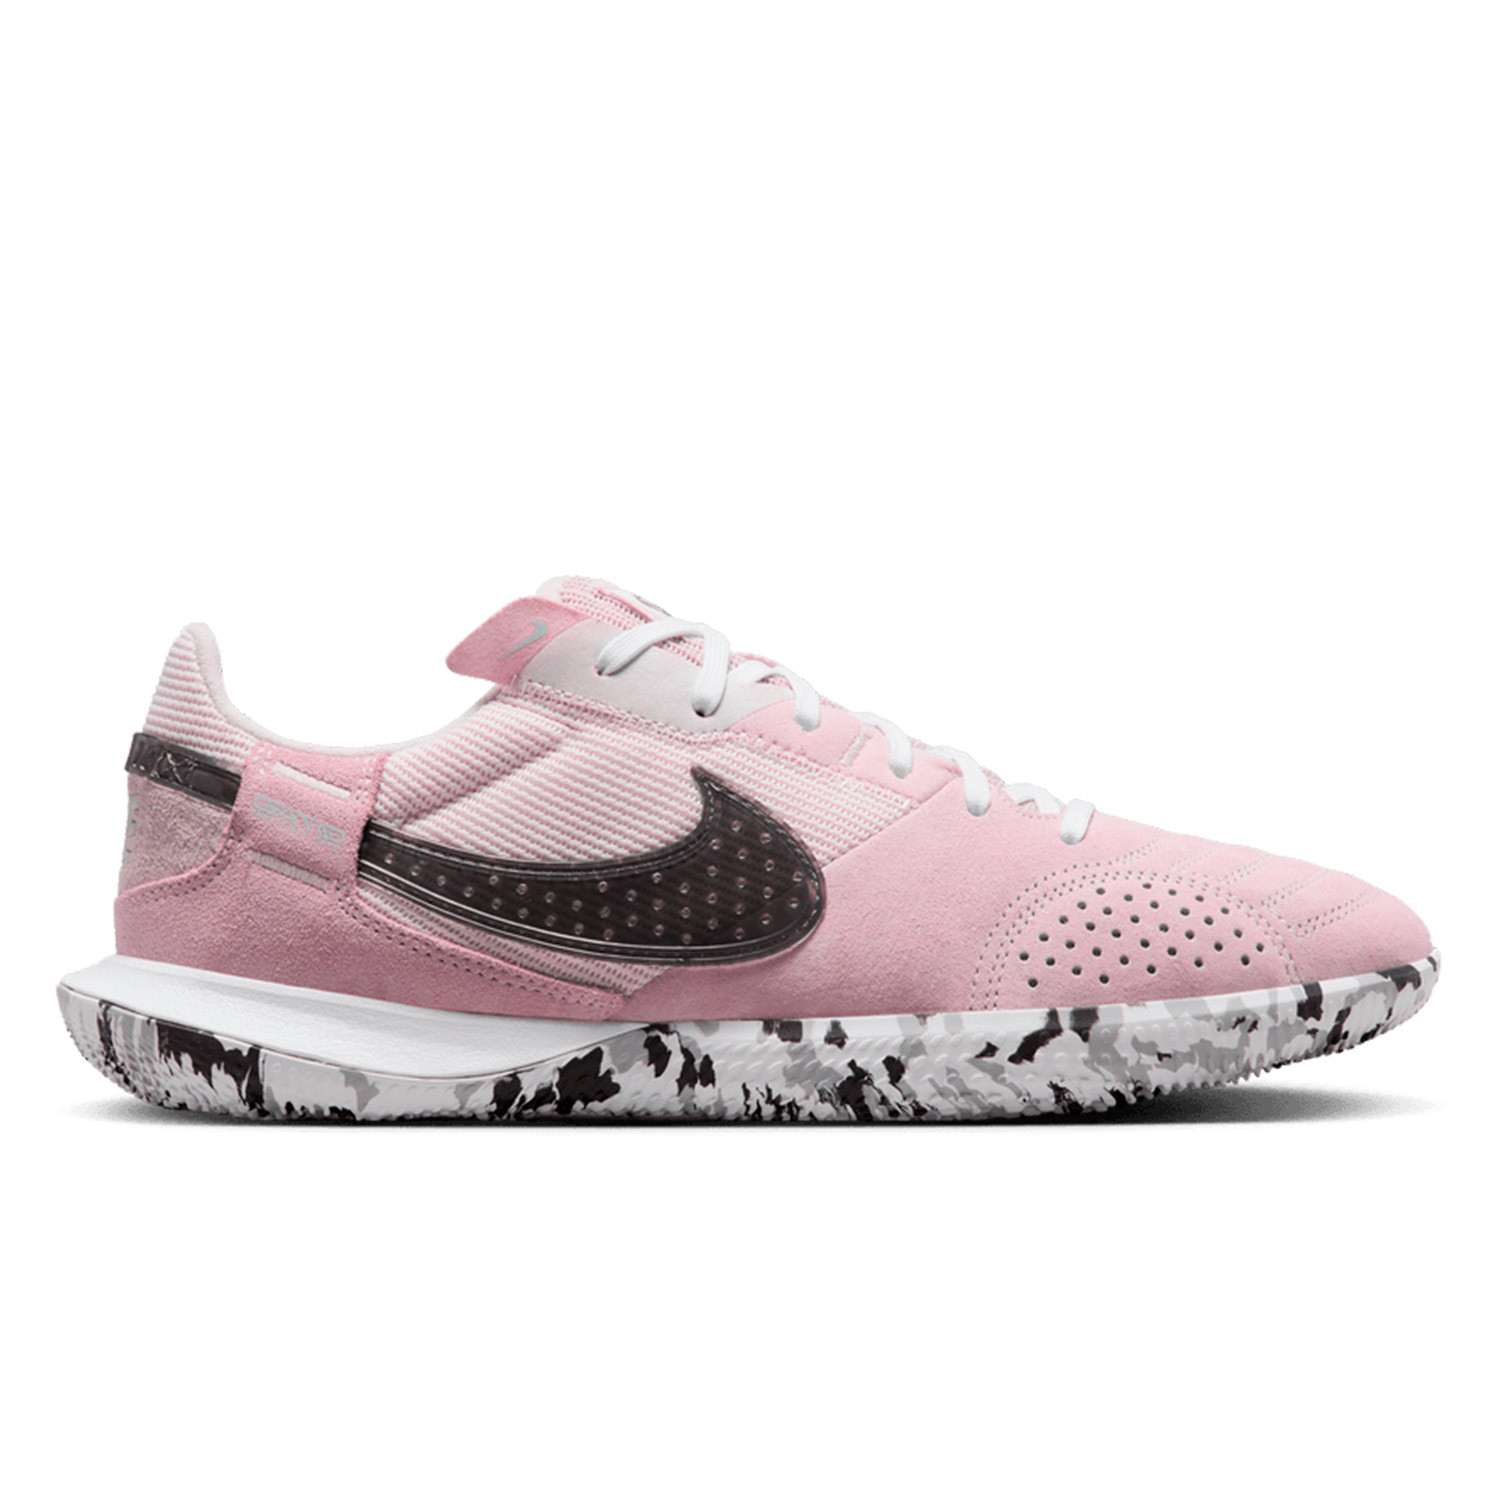 Zapatillas de fútbol sala IC en color blanco y rosa - Consigue las